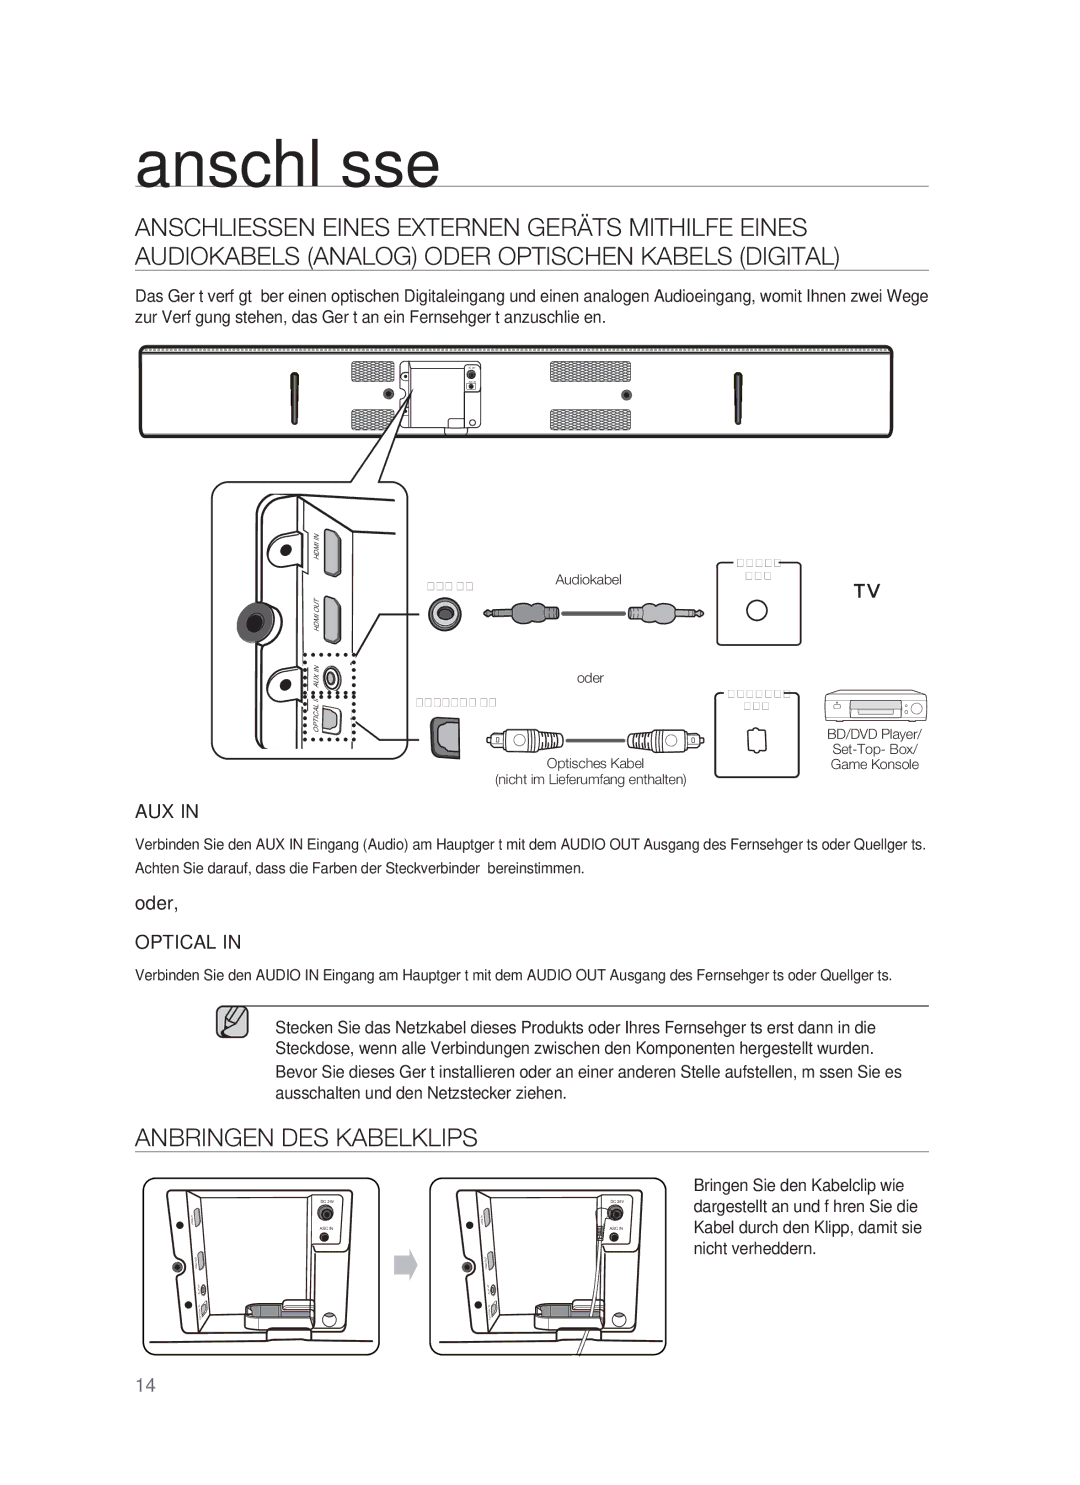 Samsung HW-F850/ZG, HW-F850/EN manual Anbringen DES Kabelklips, Aux 